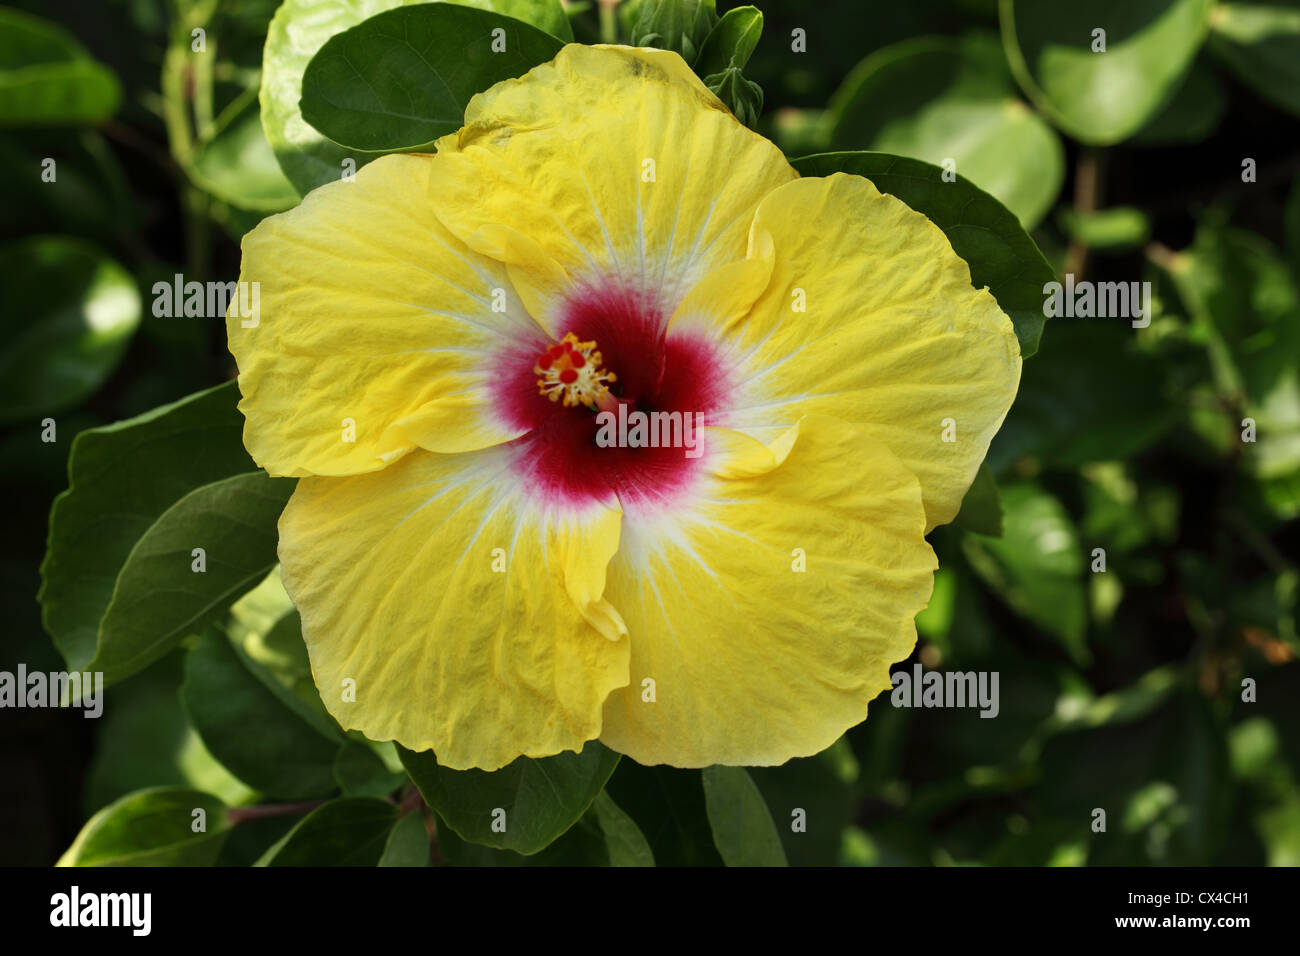 Yellow hibiscus flower Stock Photo